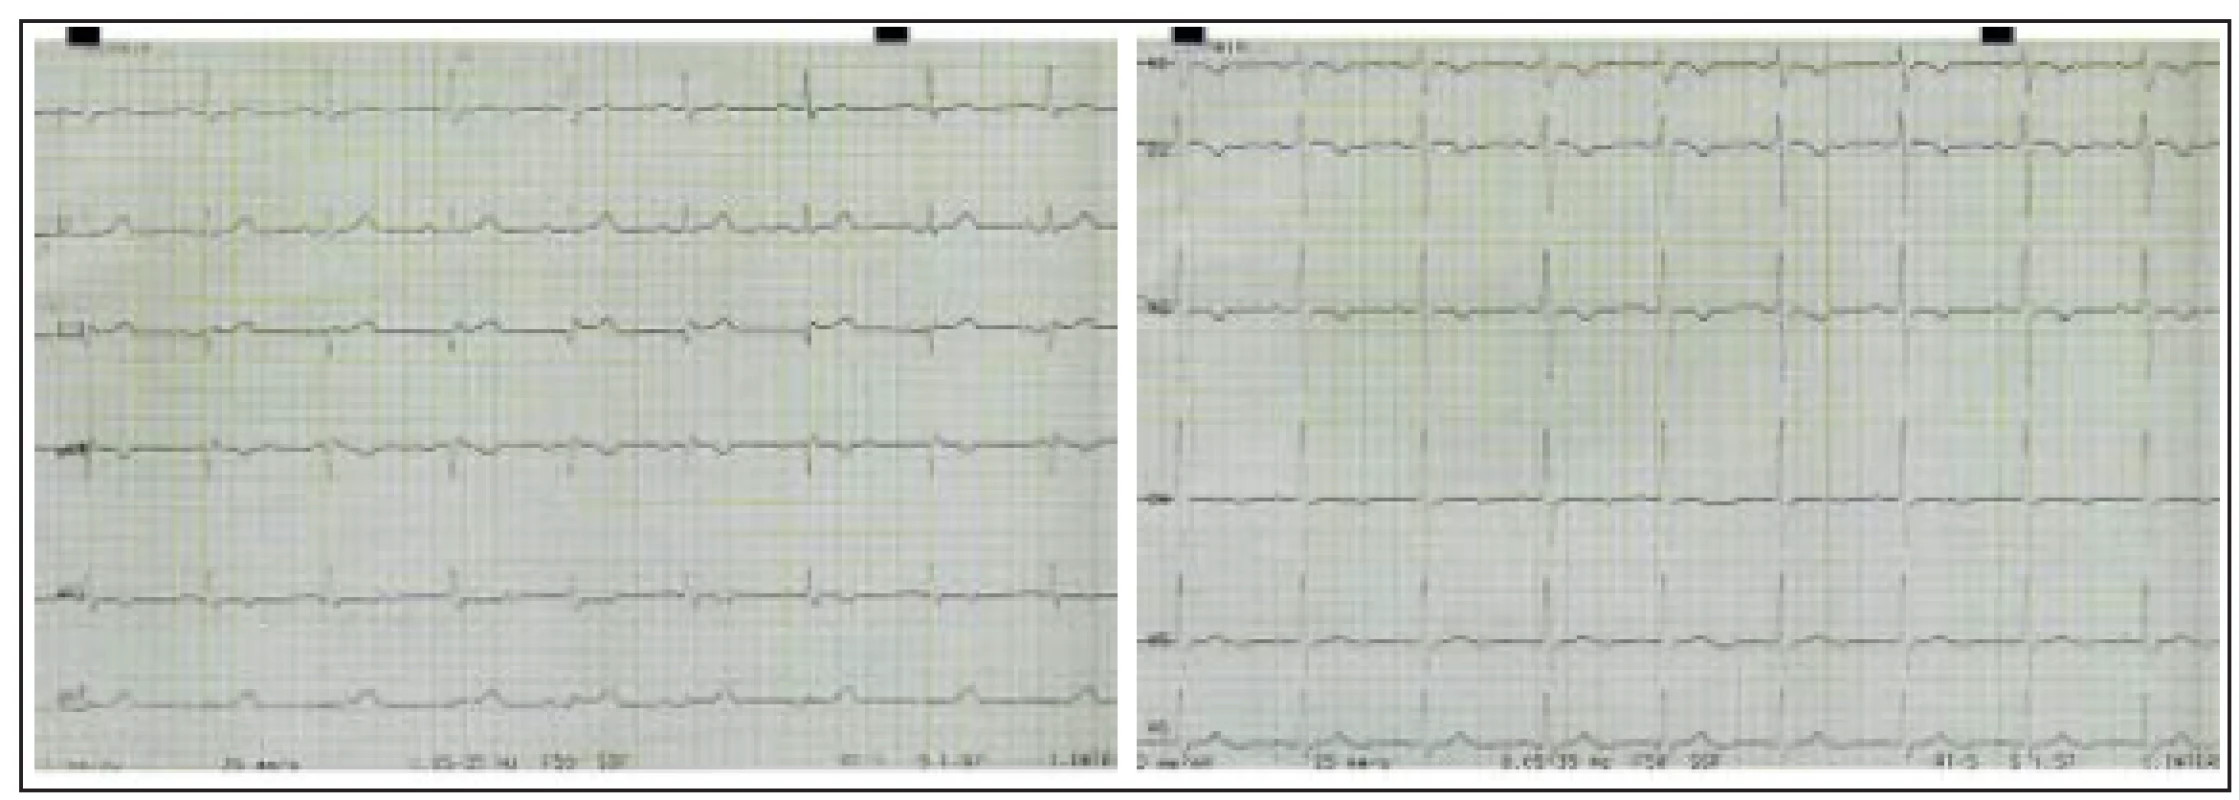 Elektrokardiografický záznam pacientky z 12. 2. 2003 při prvním kardiologickém vyšetření pro námahové bolesti na hrudi. Ve V1–V3 je negativní vlna T, v aVL vlna T ploše negativní, ve V4 oploštělá.